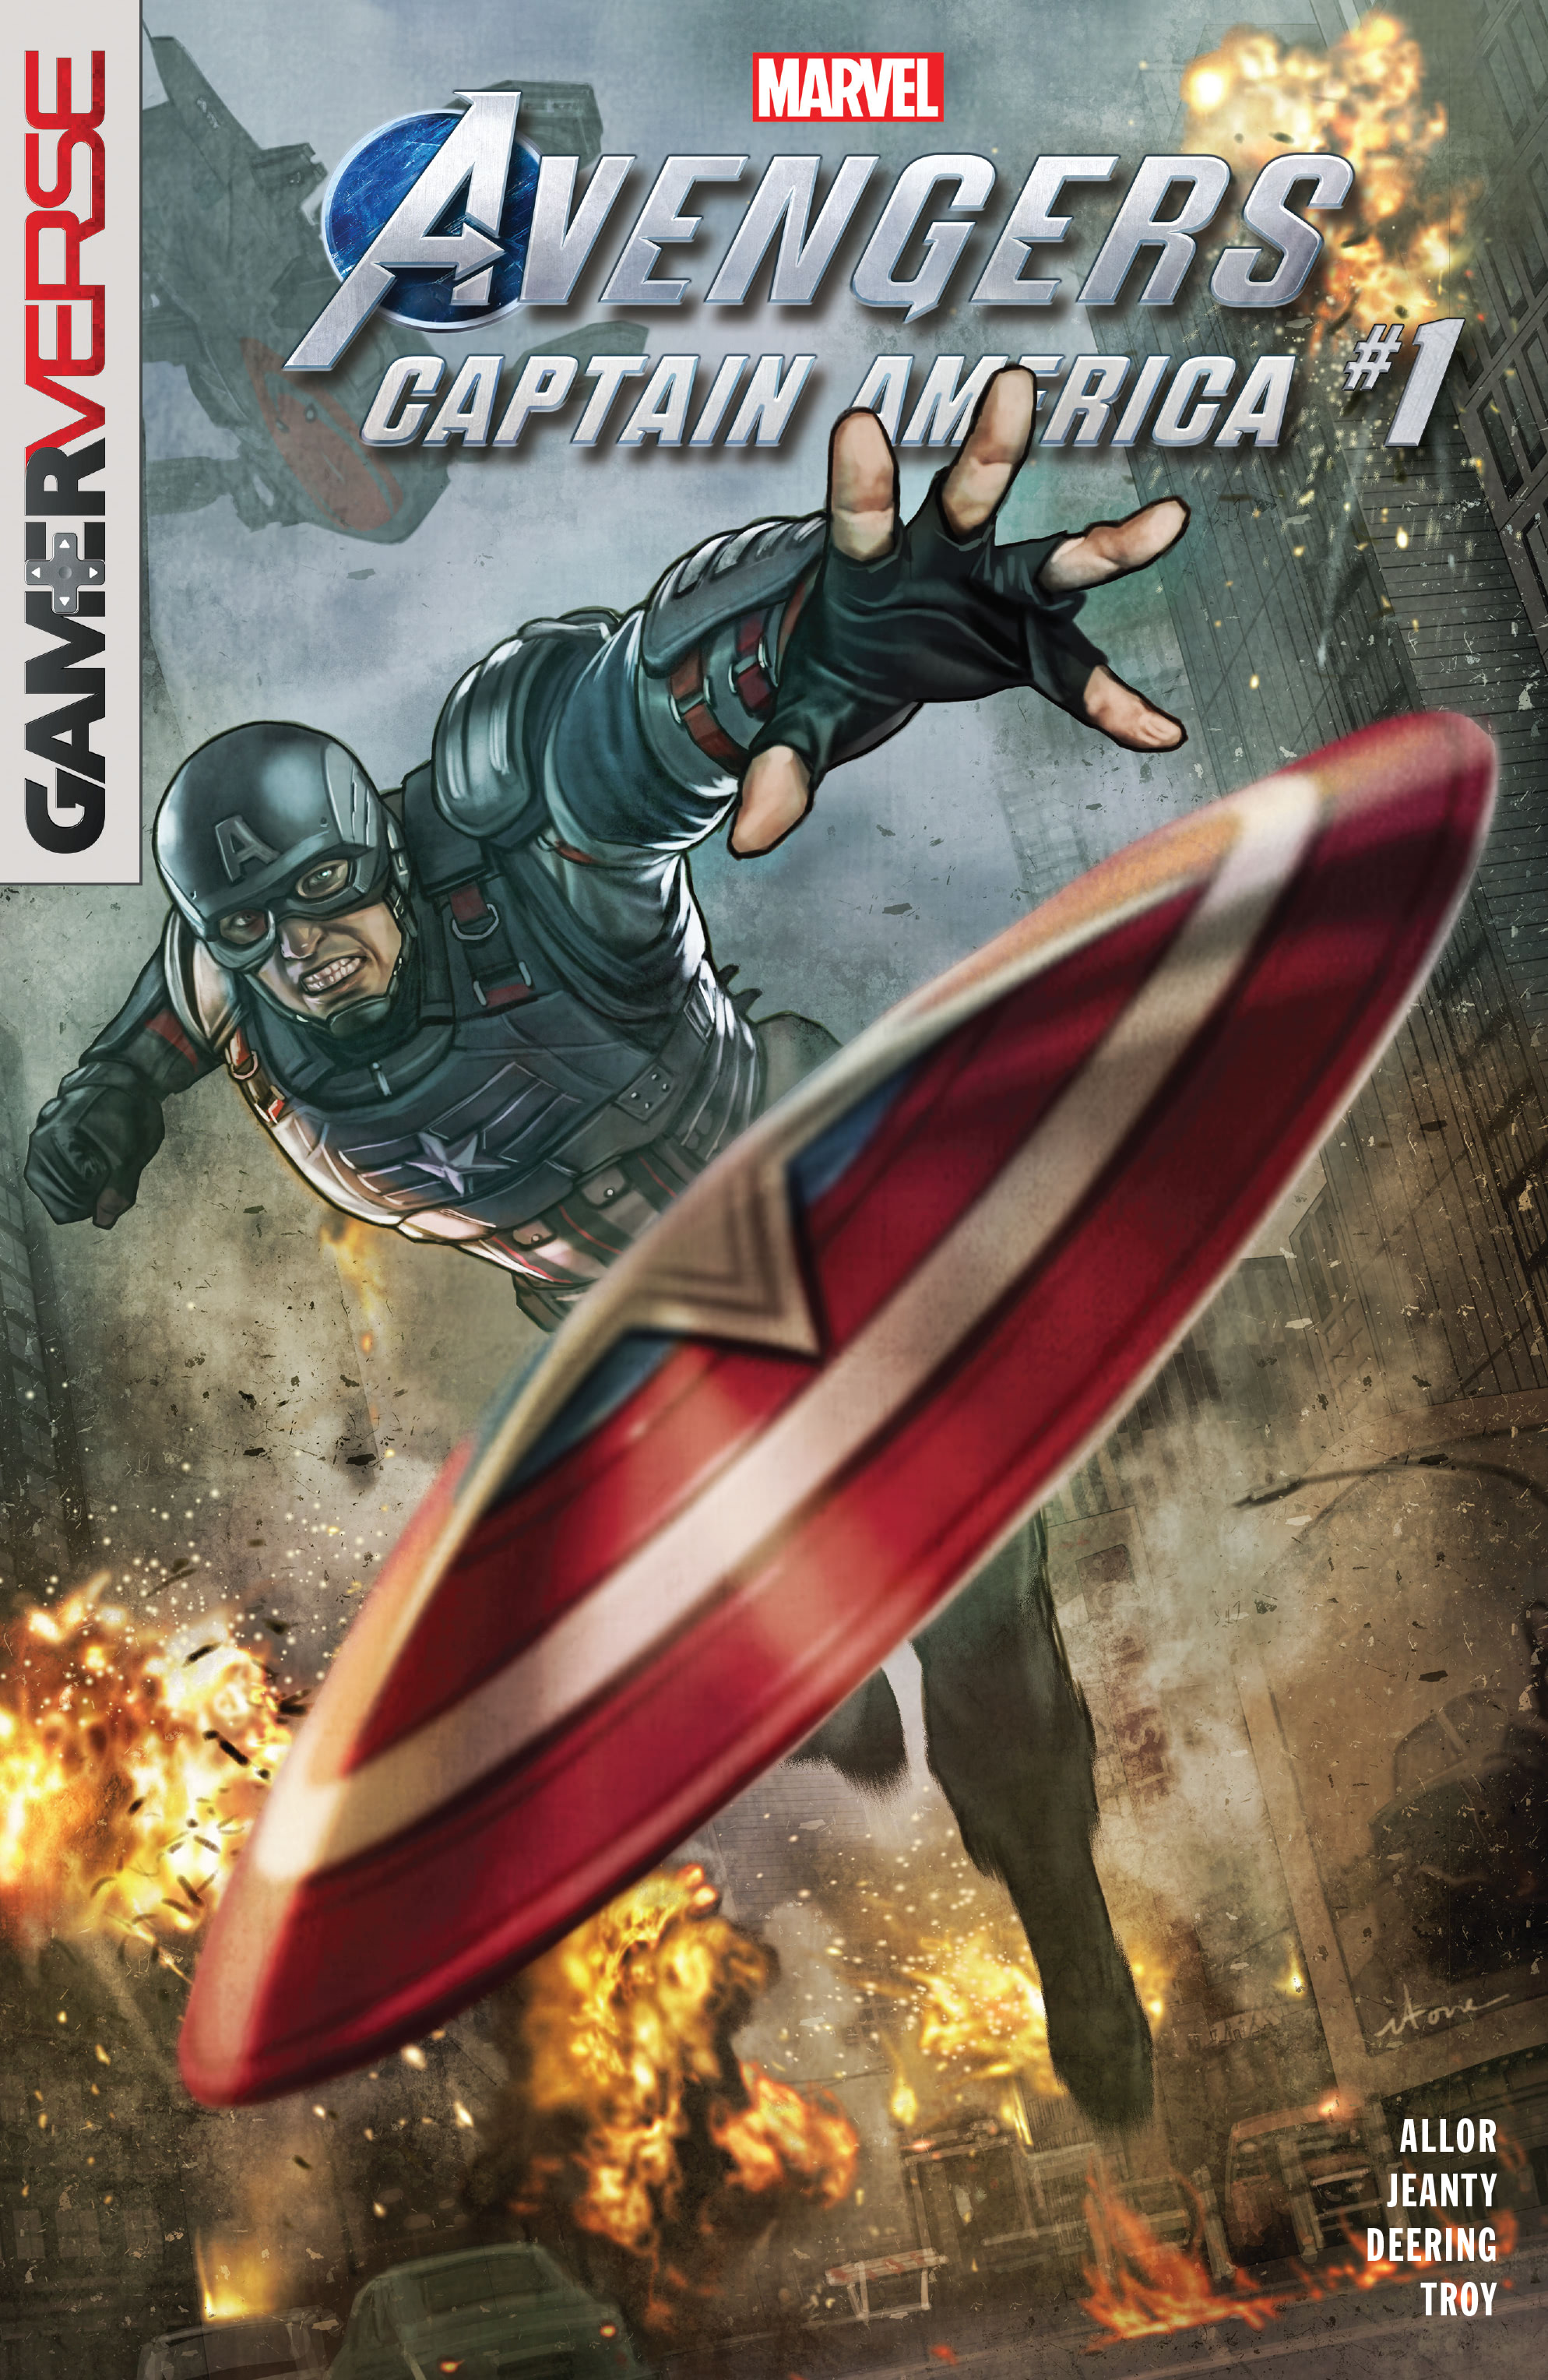 Read online Marvel's Avengers comic -  Issue # Captain America - 1